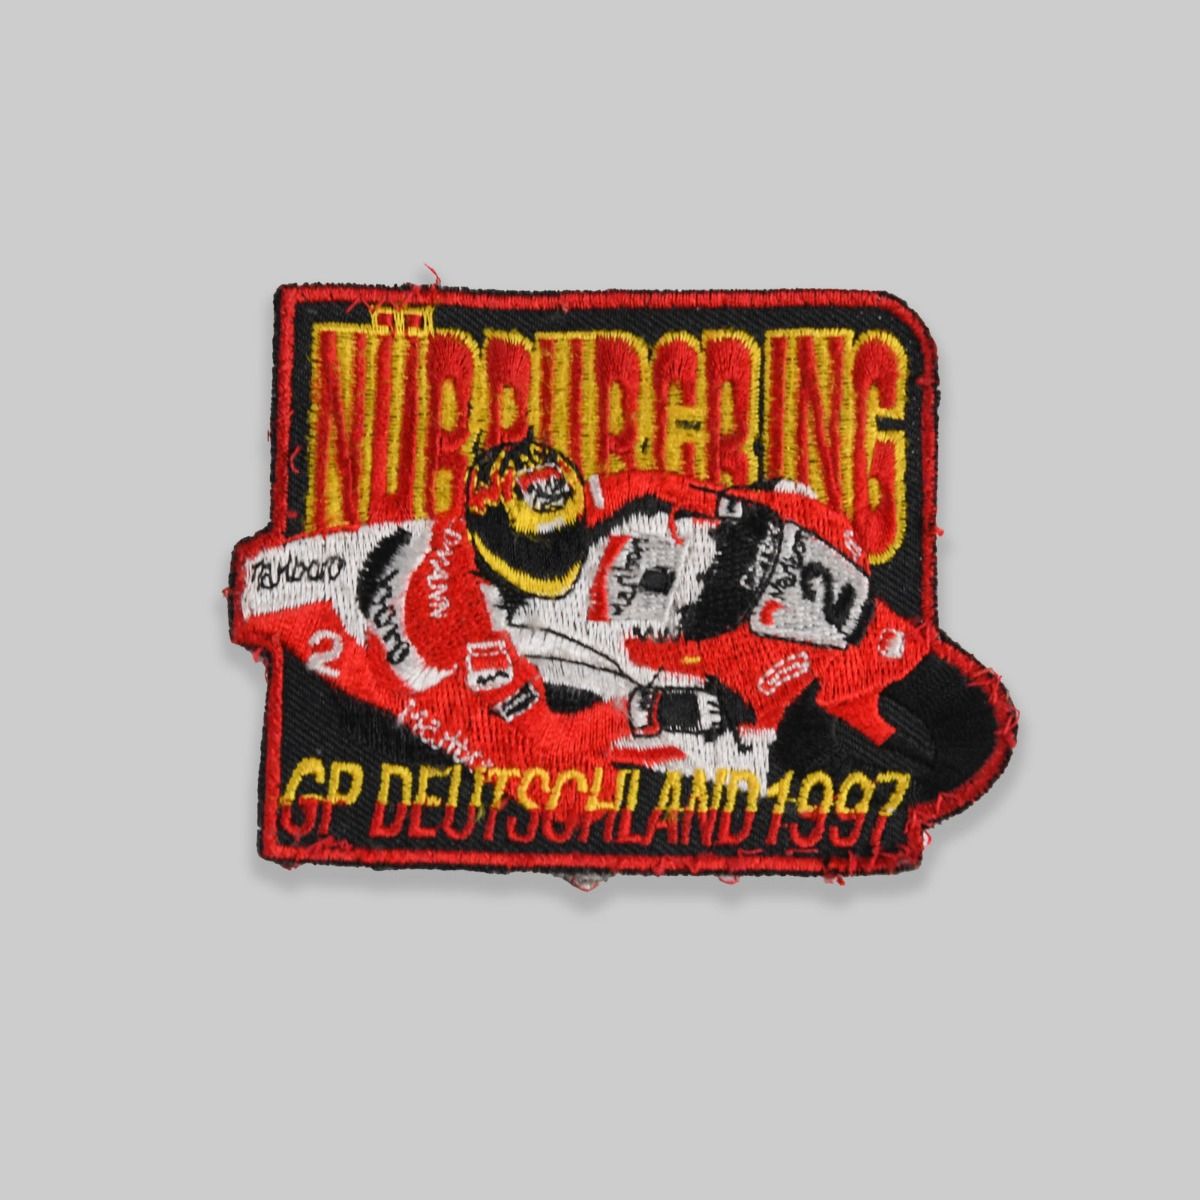 Nurburgring GP Deutschland 1997 Patch